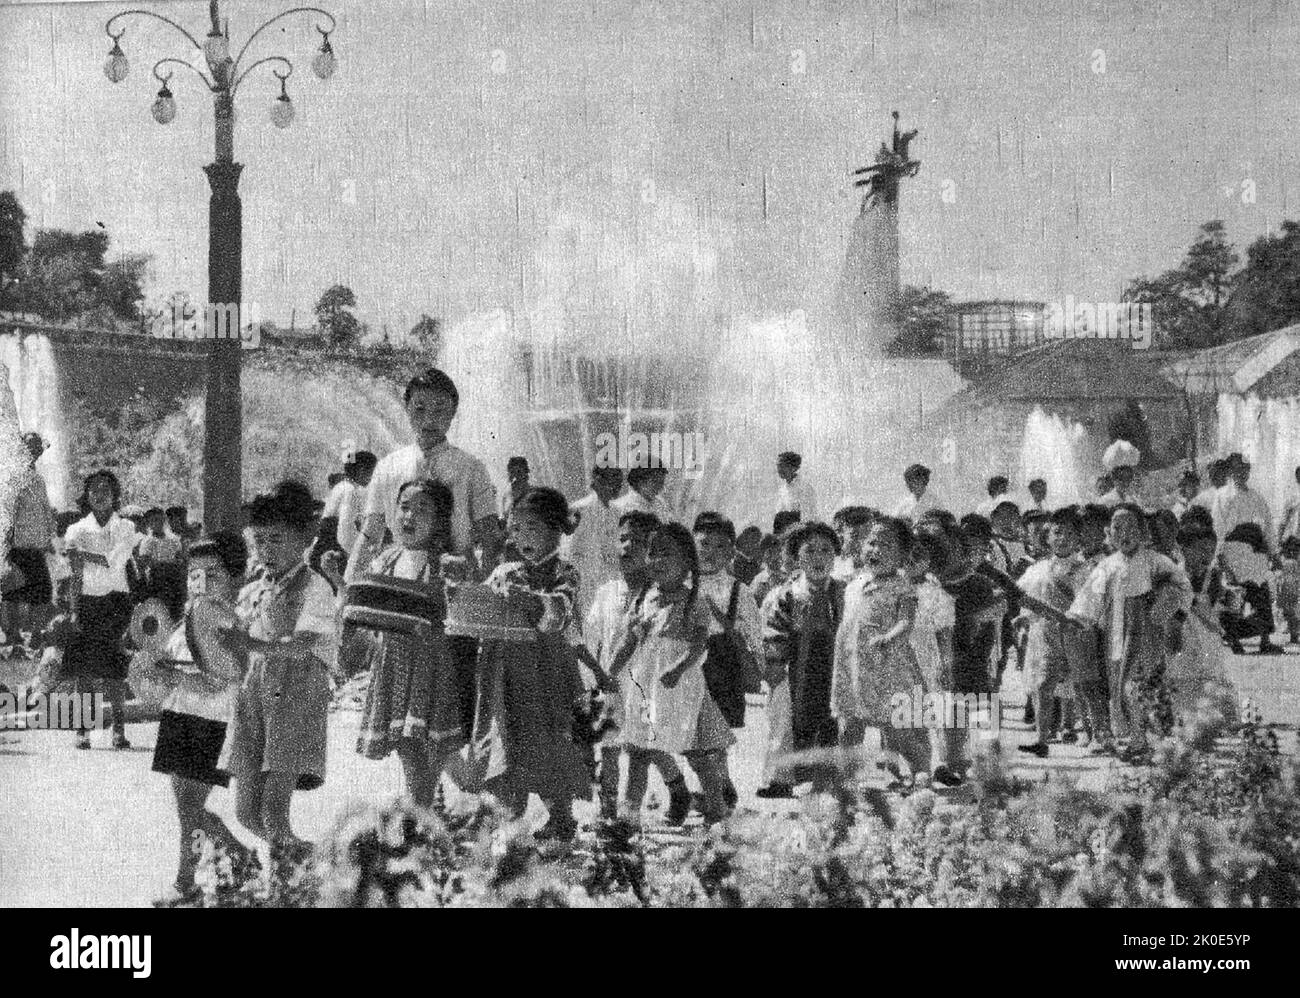 Fotografia delle celebrazioni nazionali a Pyongyang, Corea del Nord. Le celebrazioni sono costruite intorno al culto del leader Kim il Sung, 1961. Foto Stock